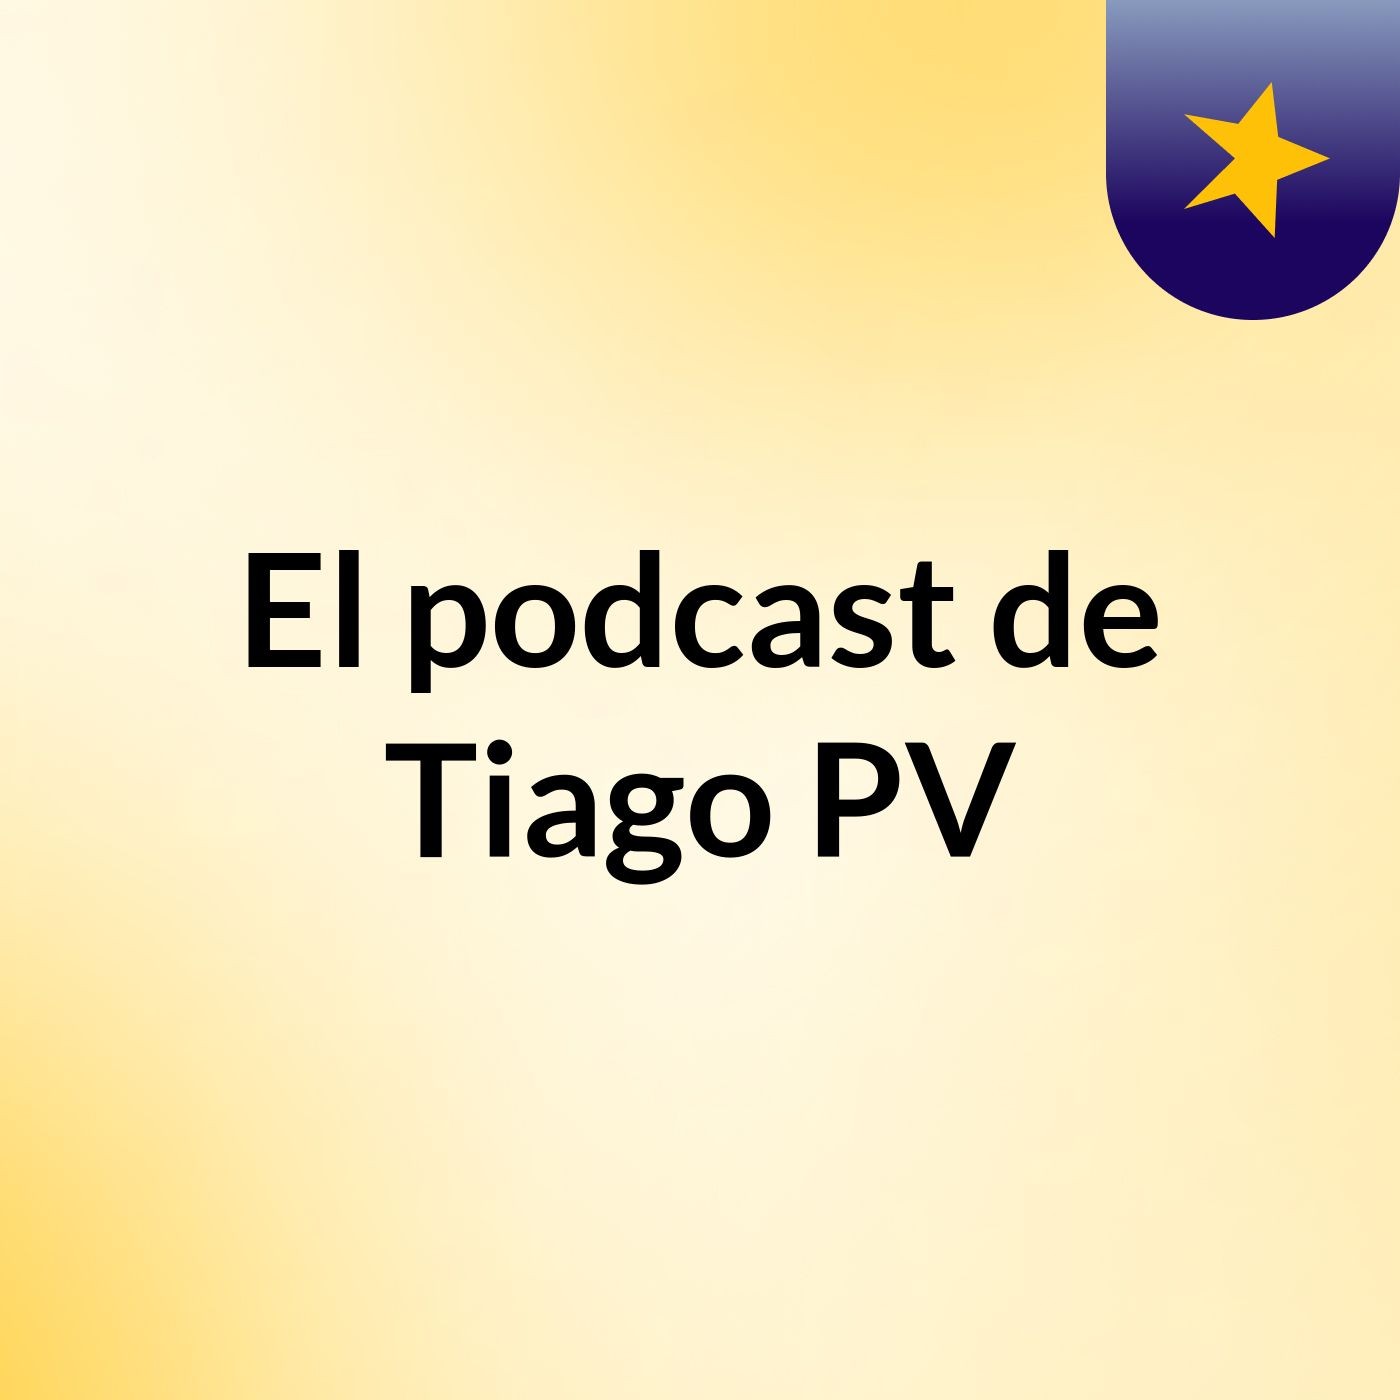 El podcast de Tiago PV